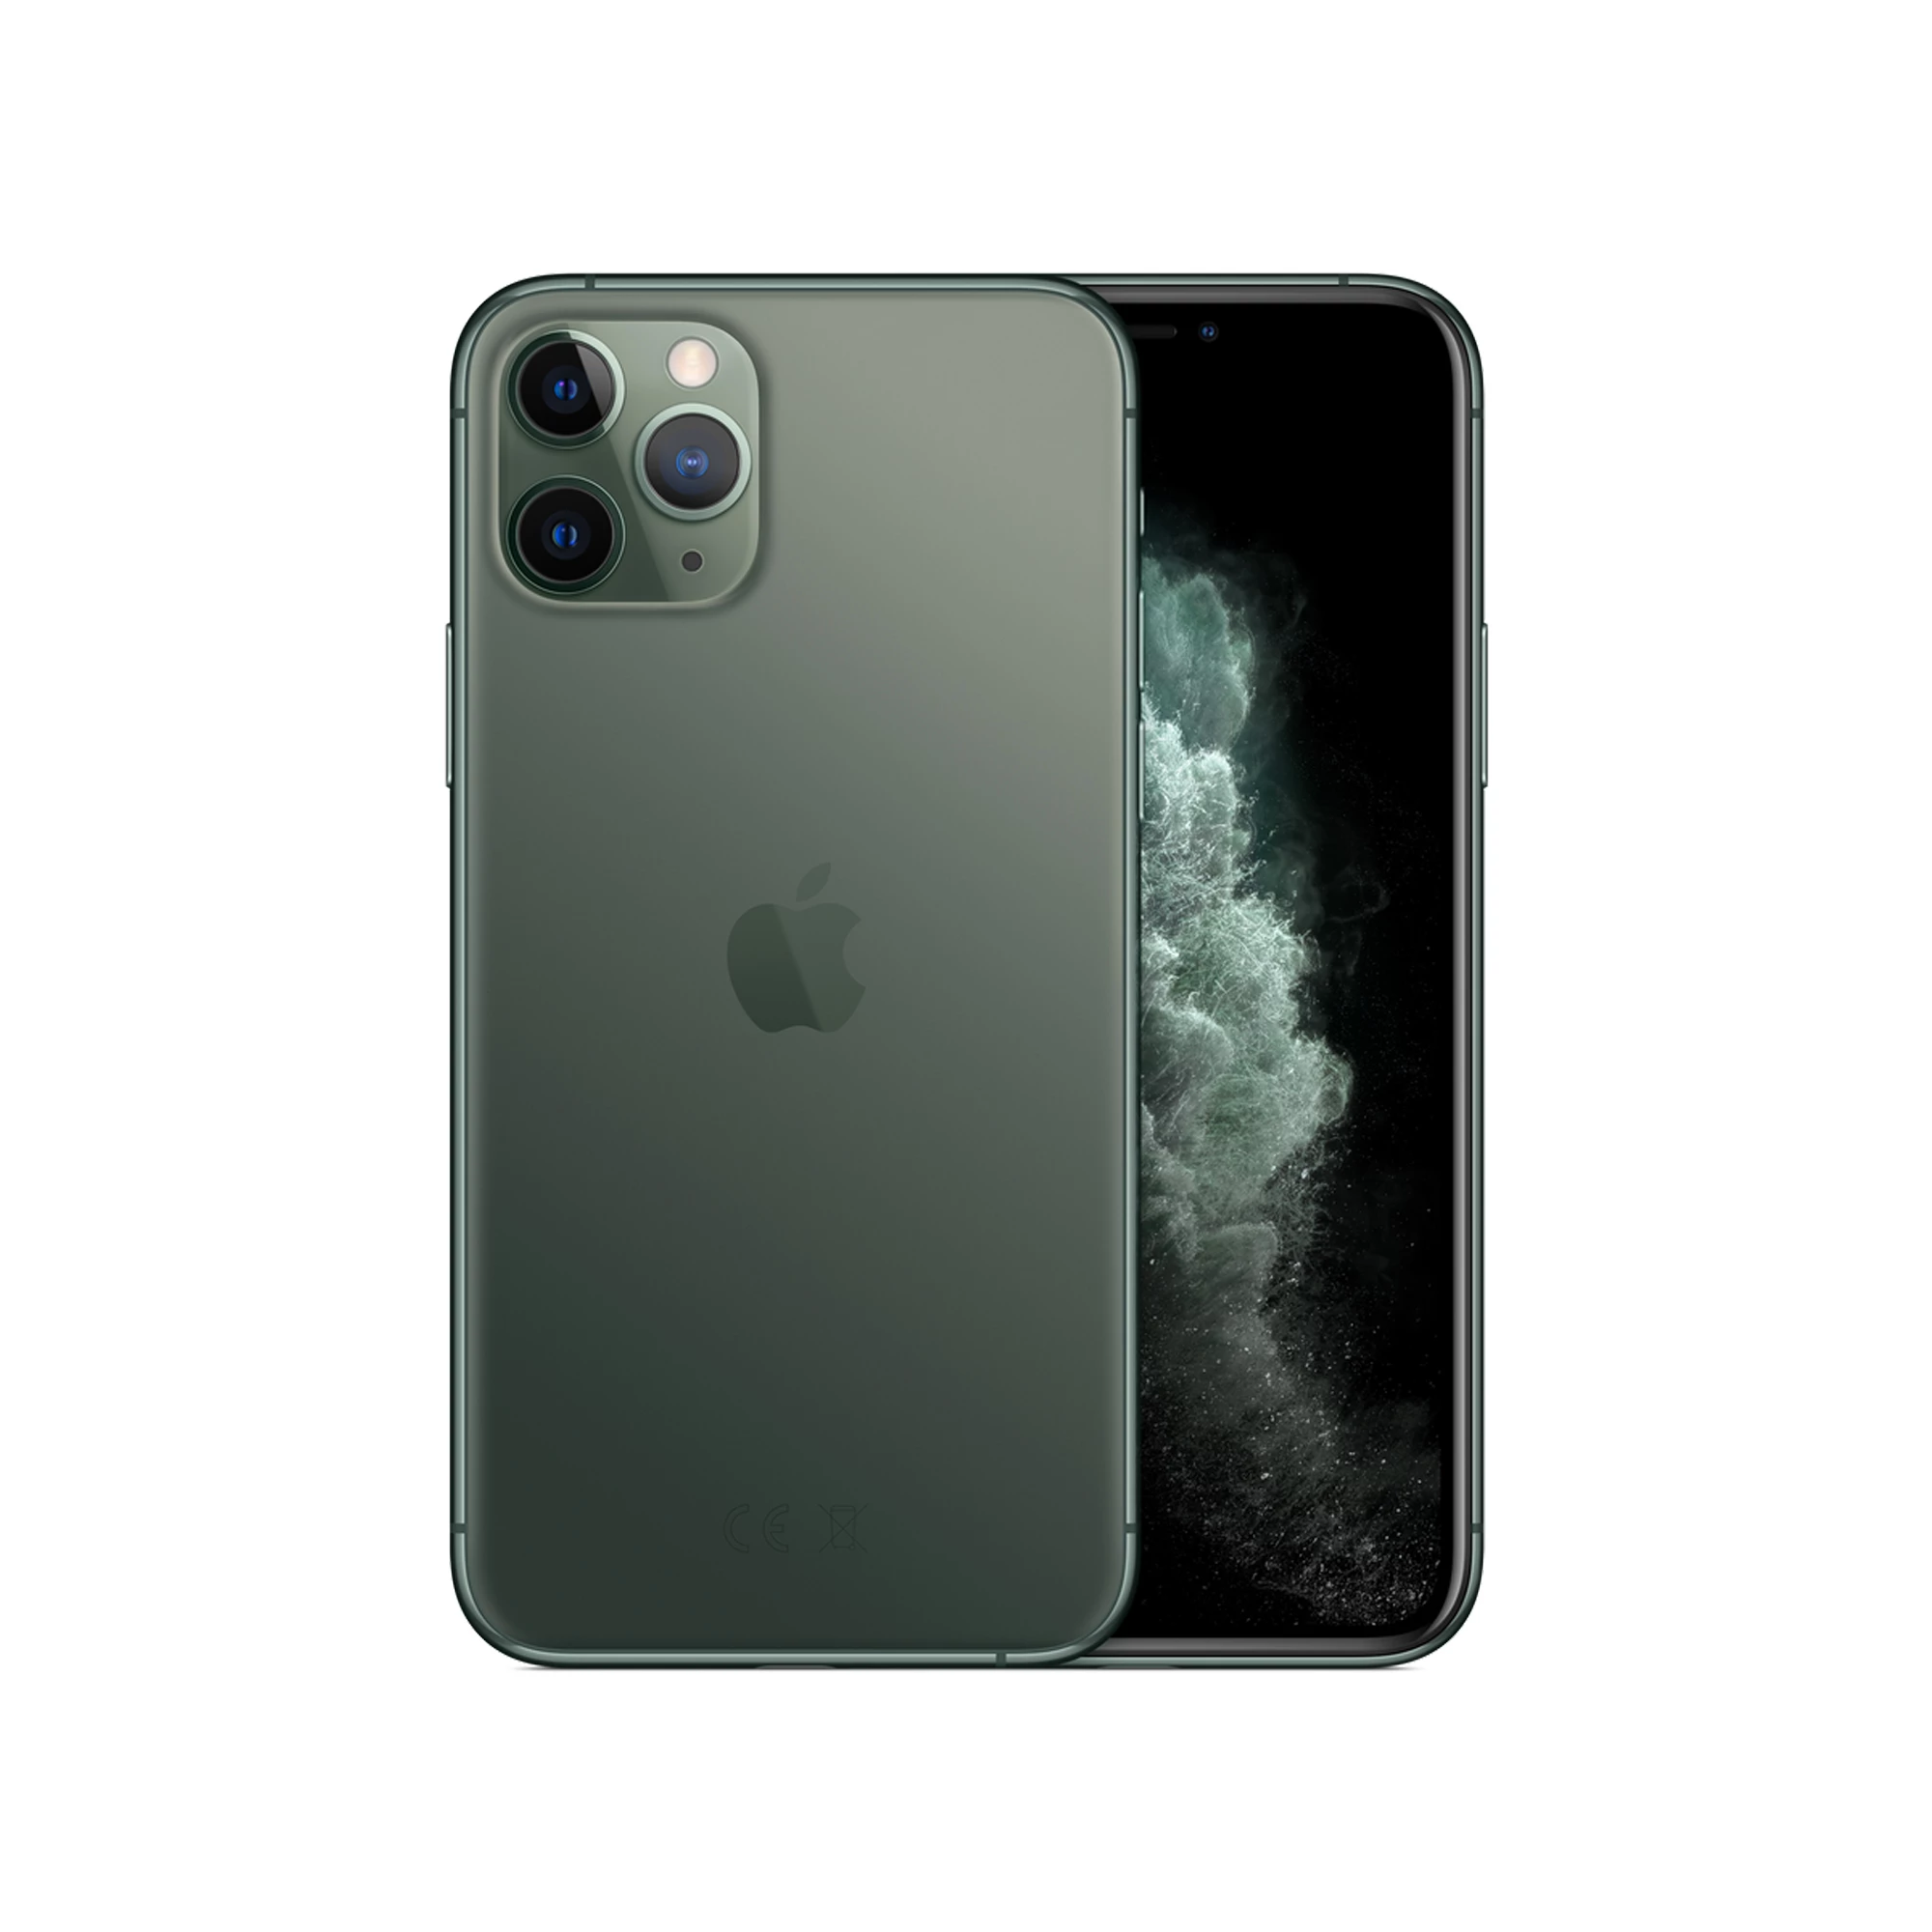 Apple iPhone 11 Pro Dual Sim 64GB Midnight Green (MWDD2)